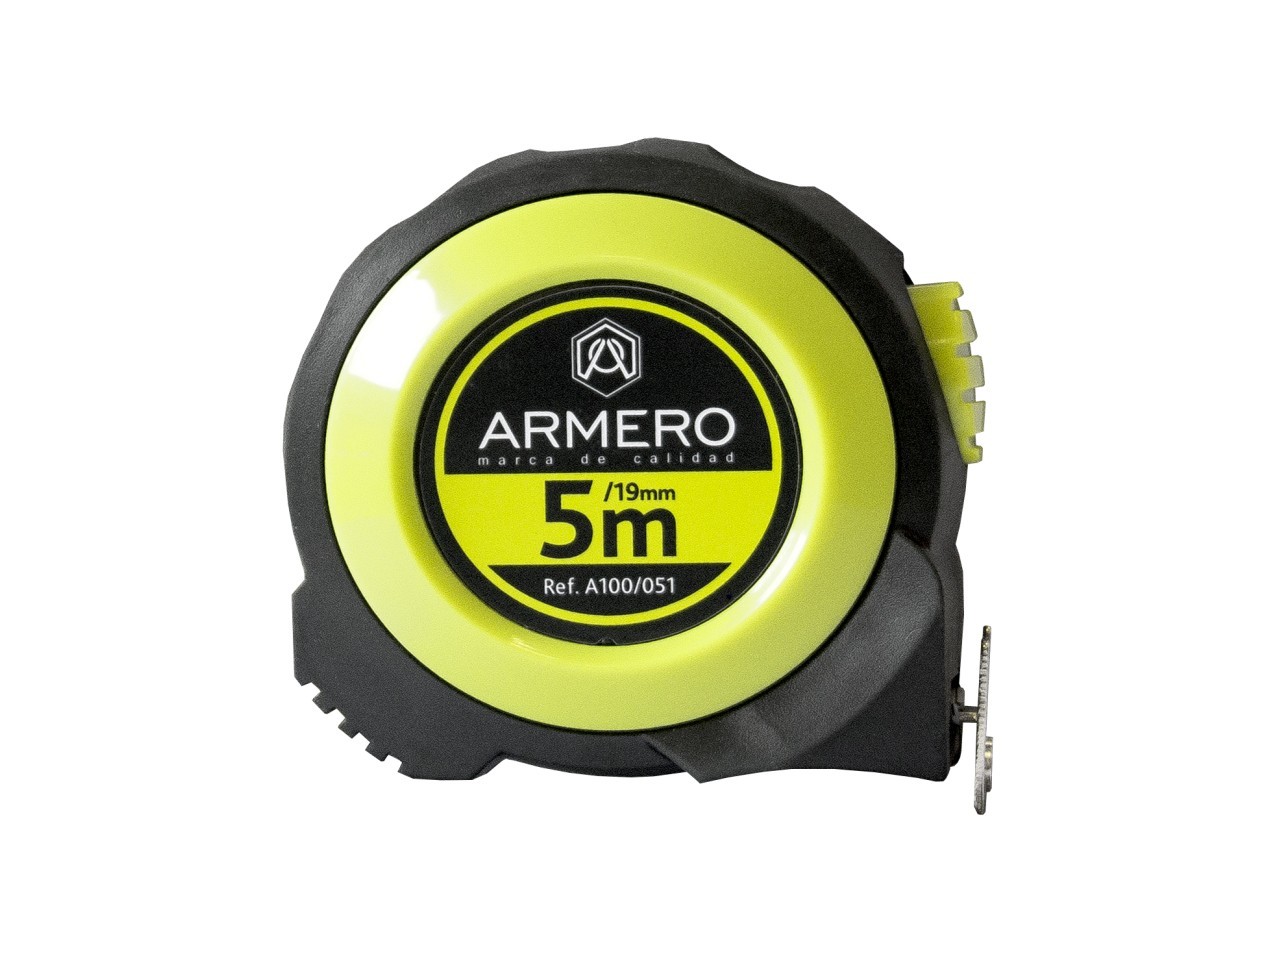 Рулетка 100 метров. Рулетка Armero a100/031. Рулетка Armero, 5 м. Armero лента измерительная 100 м. Рулетка Armero, 3 мх16 мм.